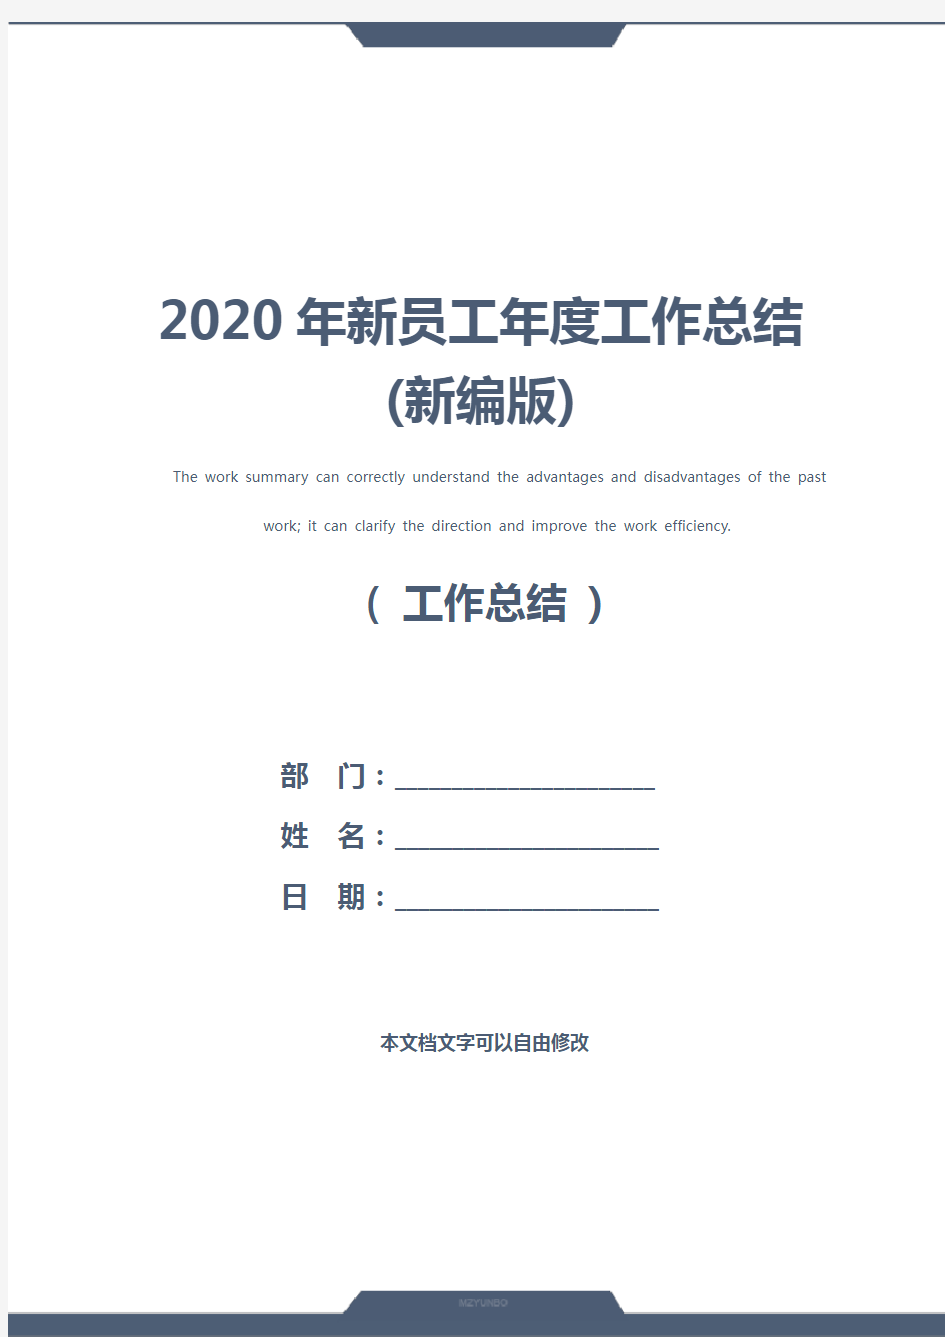 2020年新员工年度工作总结(新编版)